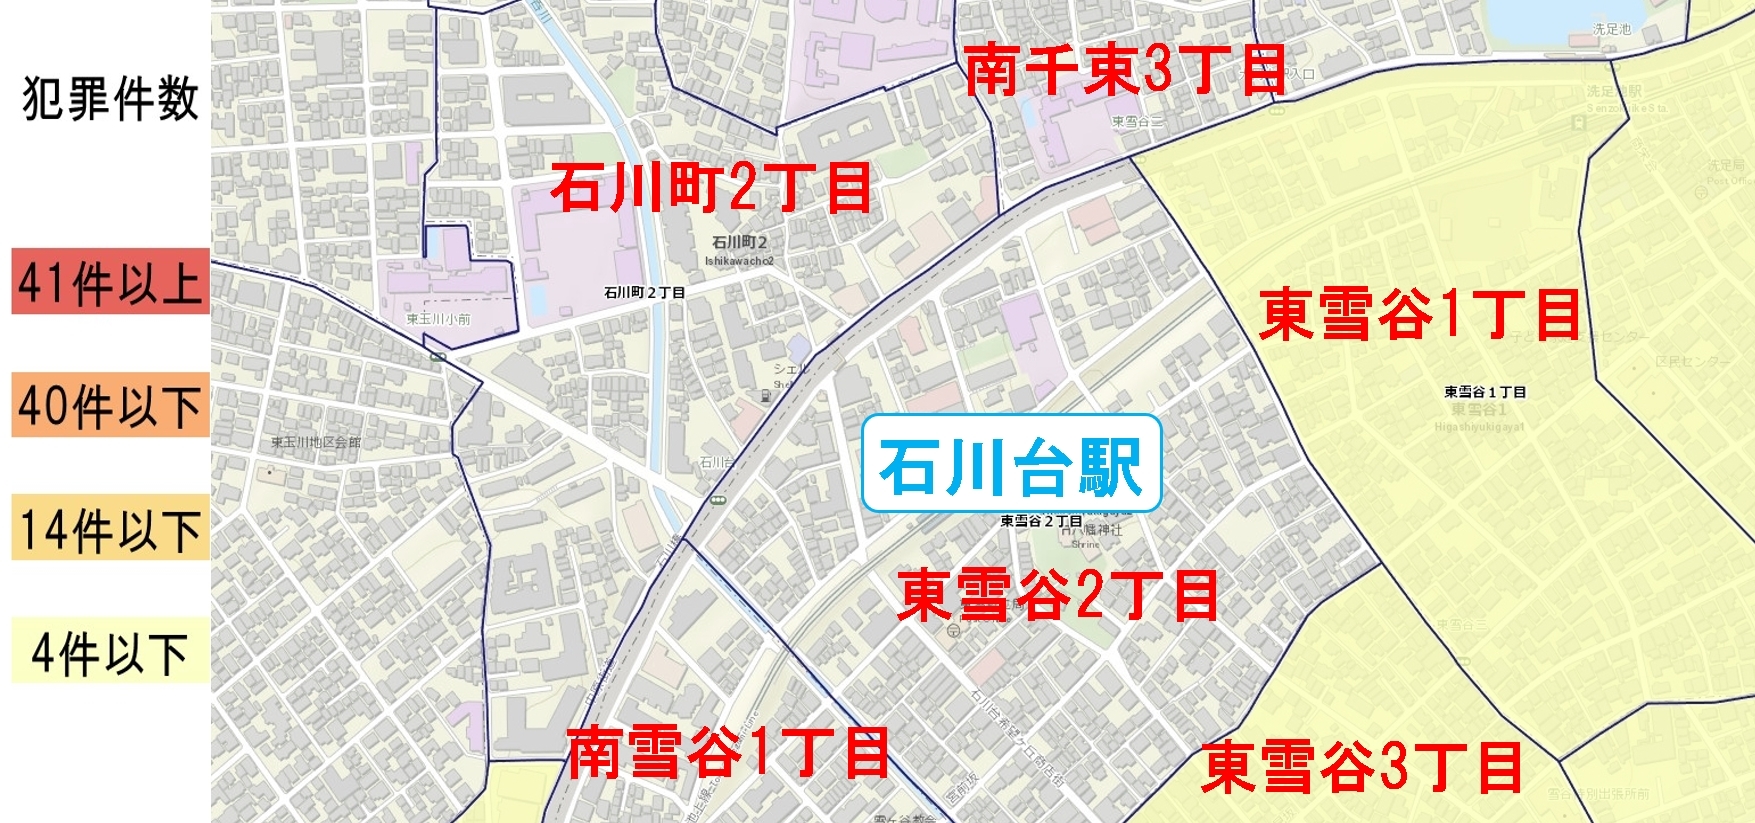 石川台駅周辺の粗暴犯の犯罪件数マップ